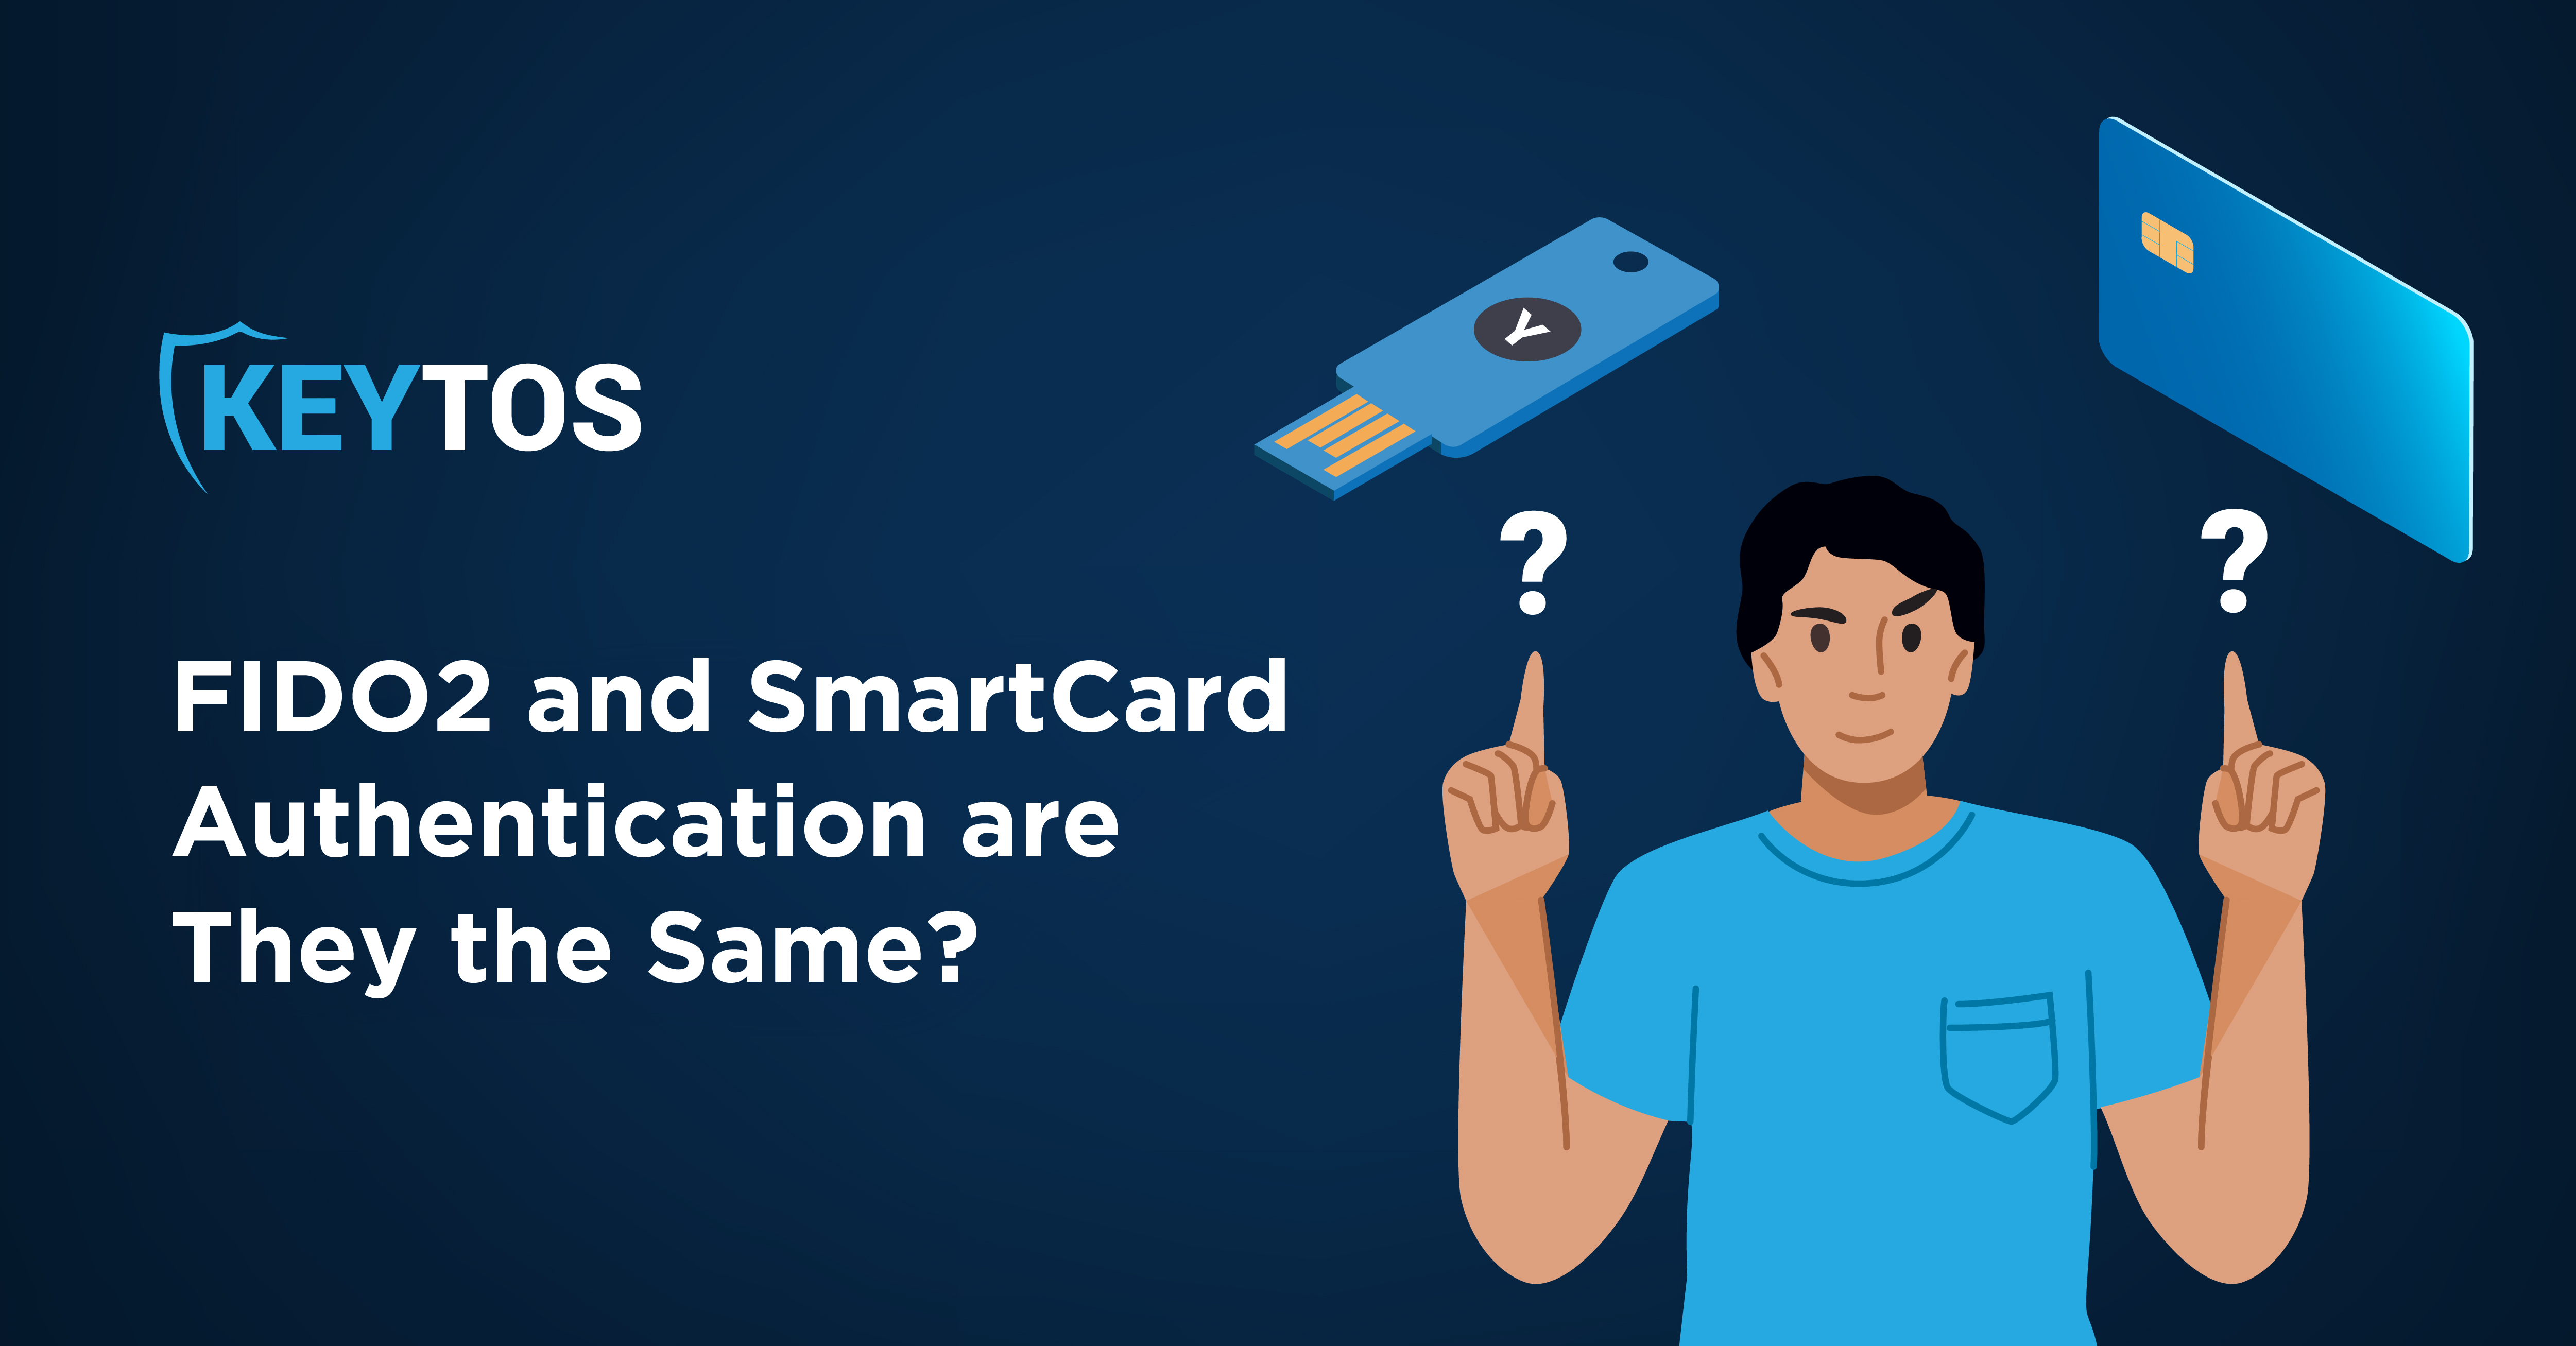 ¿Cuál es la Diferencia Entre FIDO2 y la Autenticación con Smartcard?